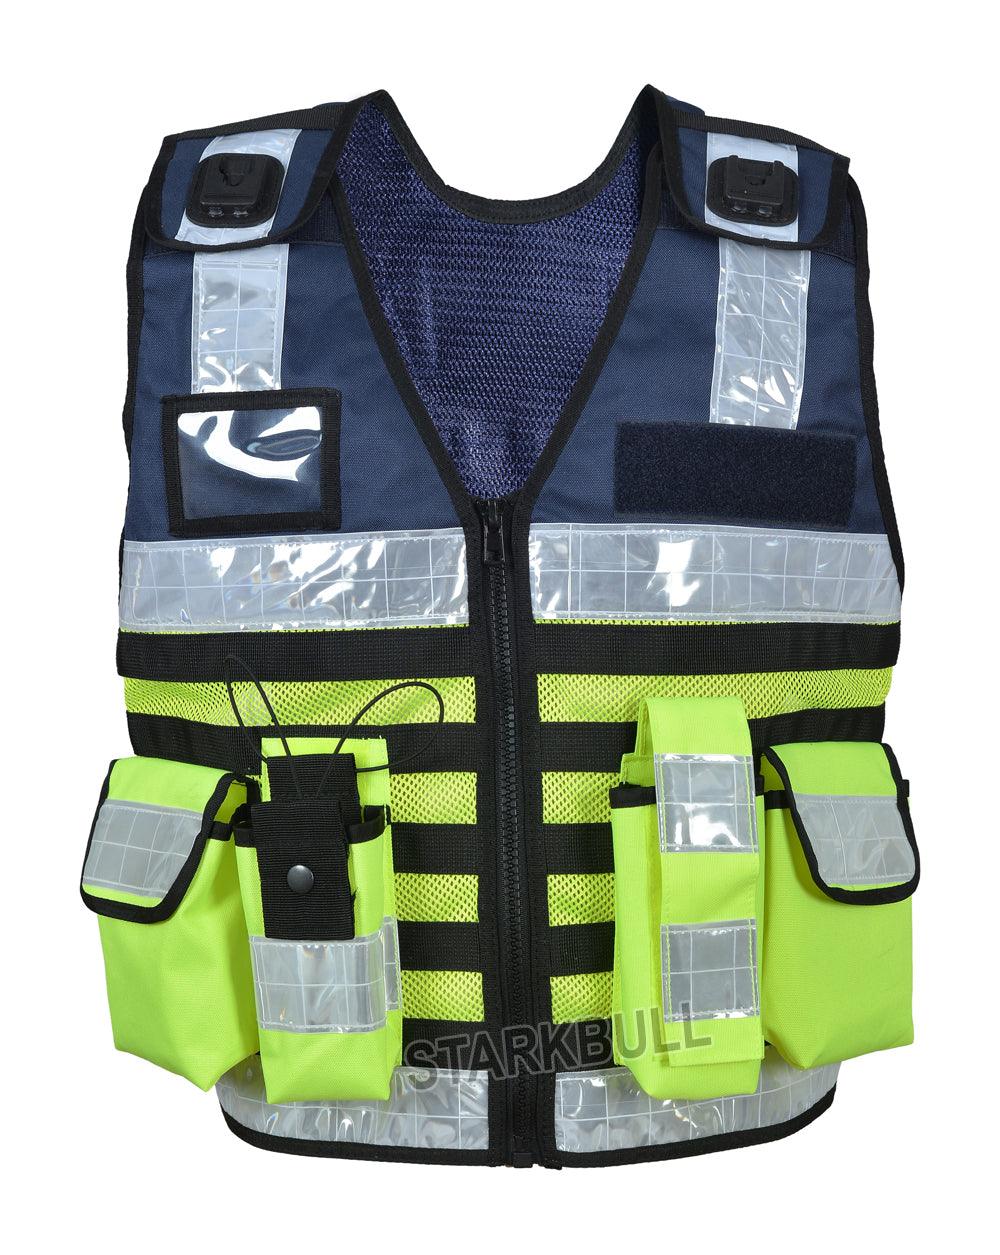 9112 DarkBlue Big Sizes Hi Viz Security Vest with Personalized Patches, High Visibility Tactical Vest - Starkbull Hi Viz Vests